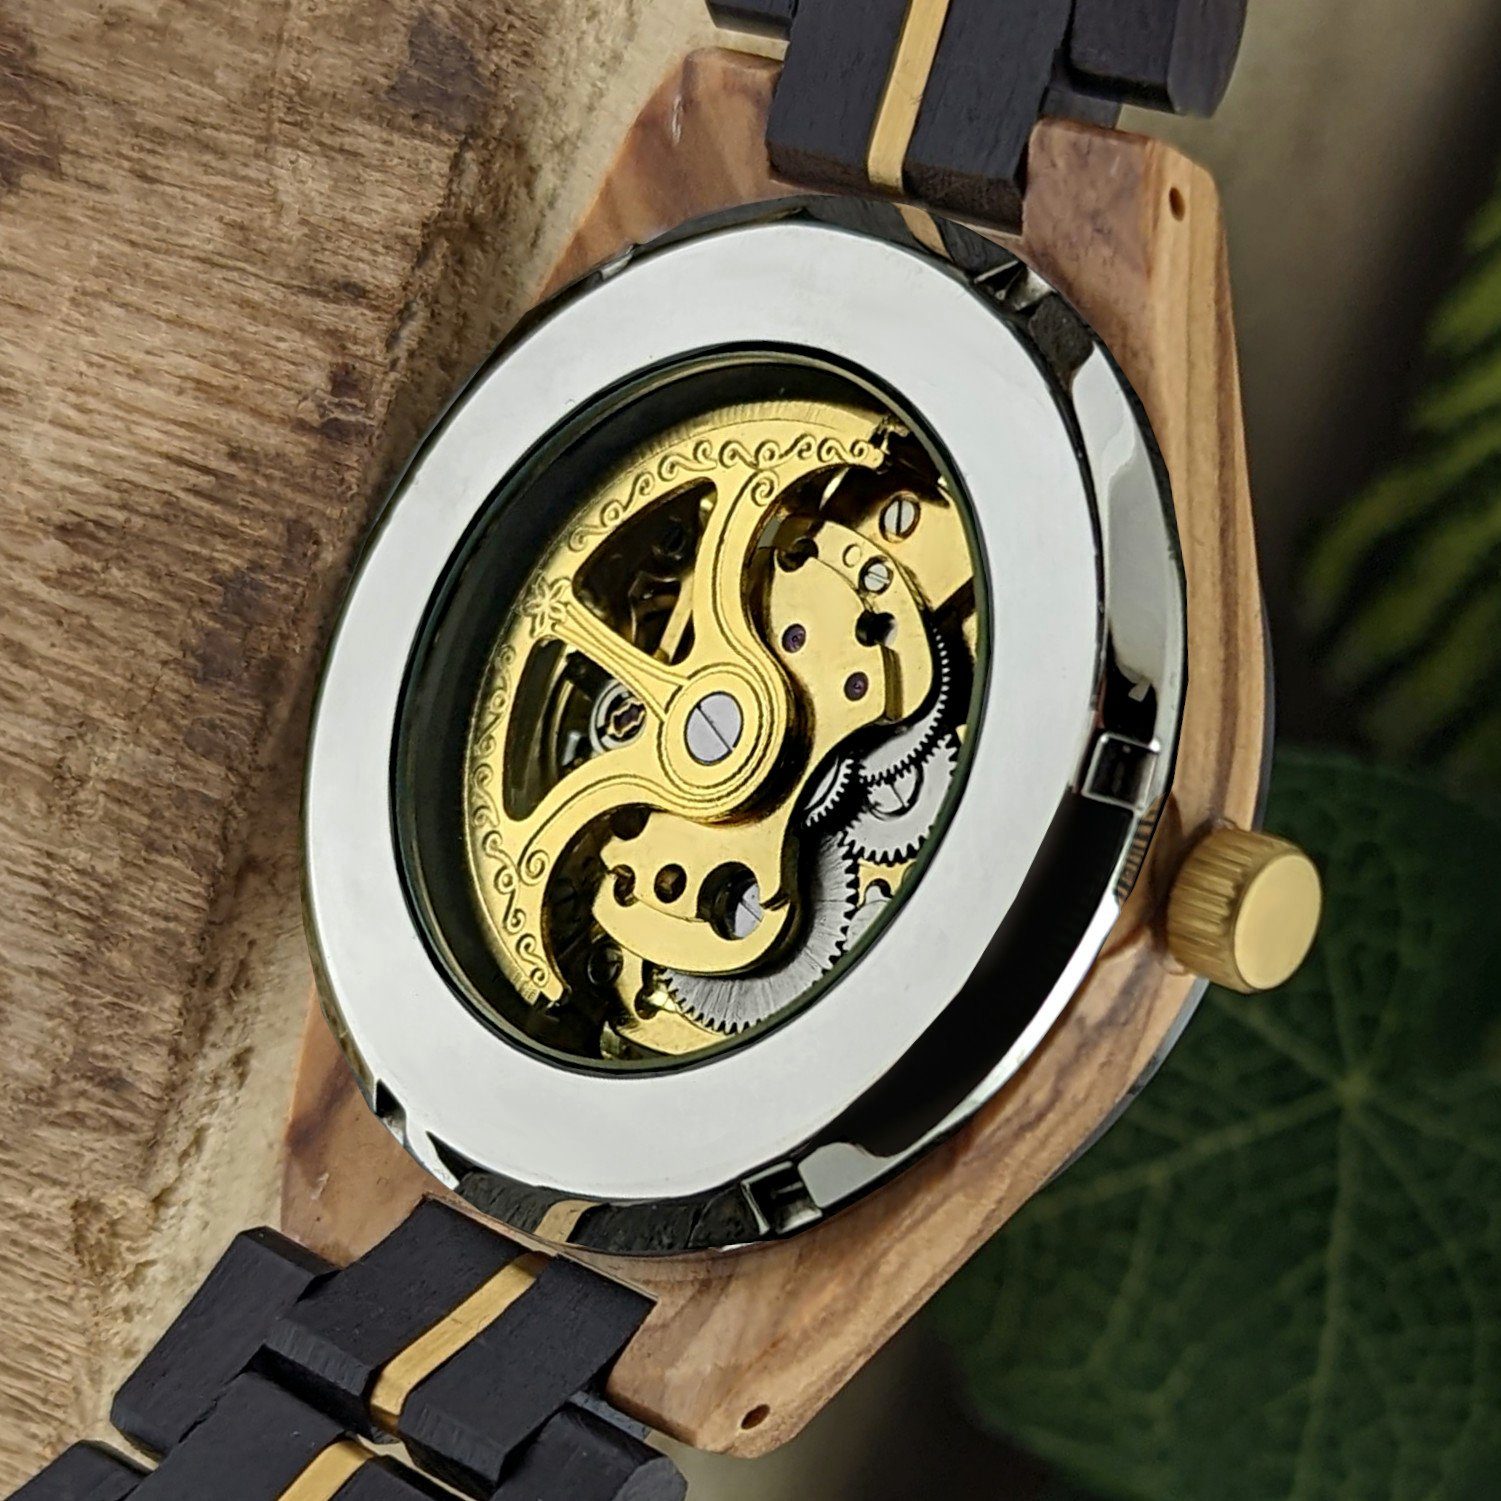 Holzwerk Automatikuhr CALAU & beige, gold schwarz, Armband Edelstahl in Uhr Herren Holz